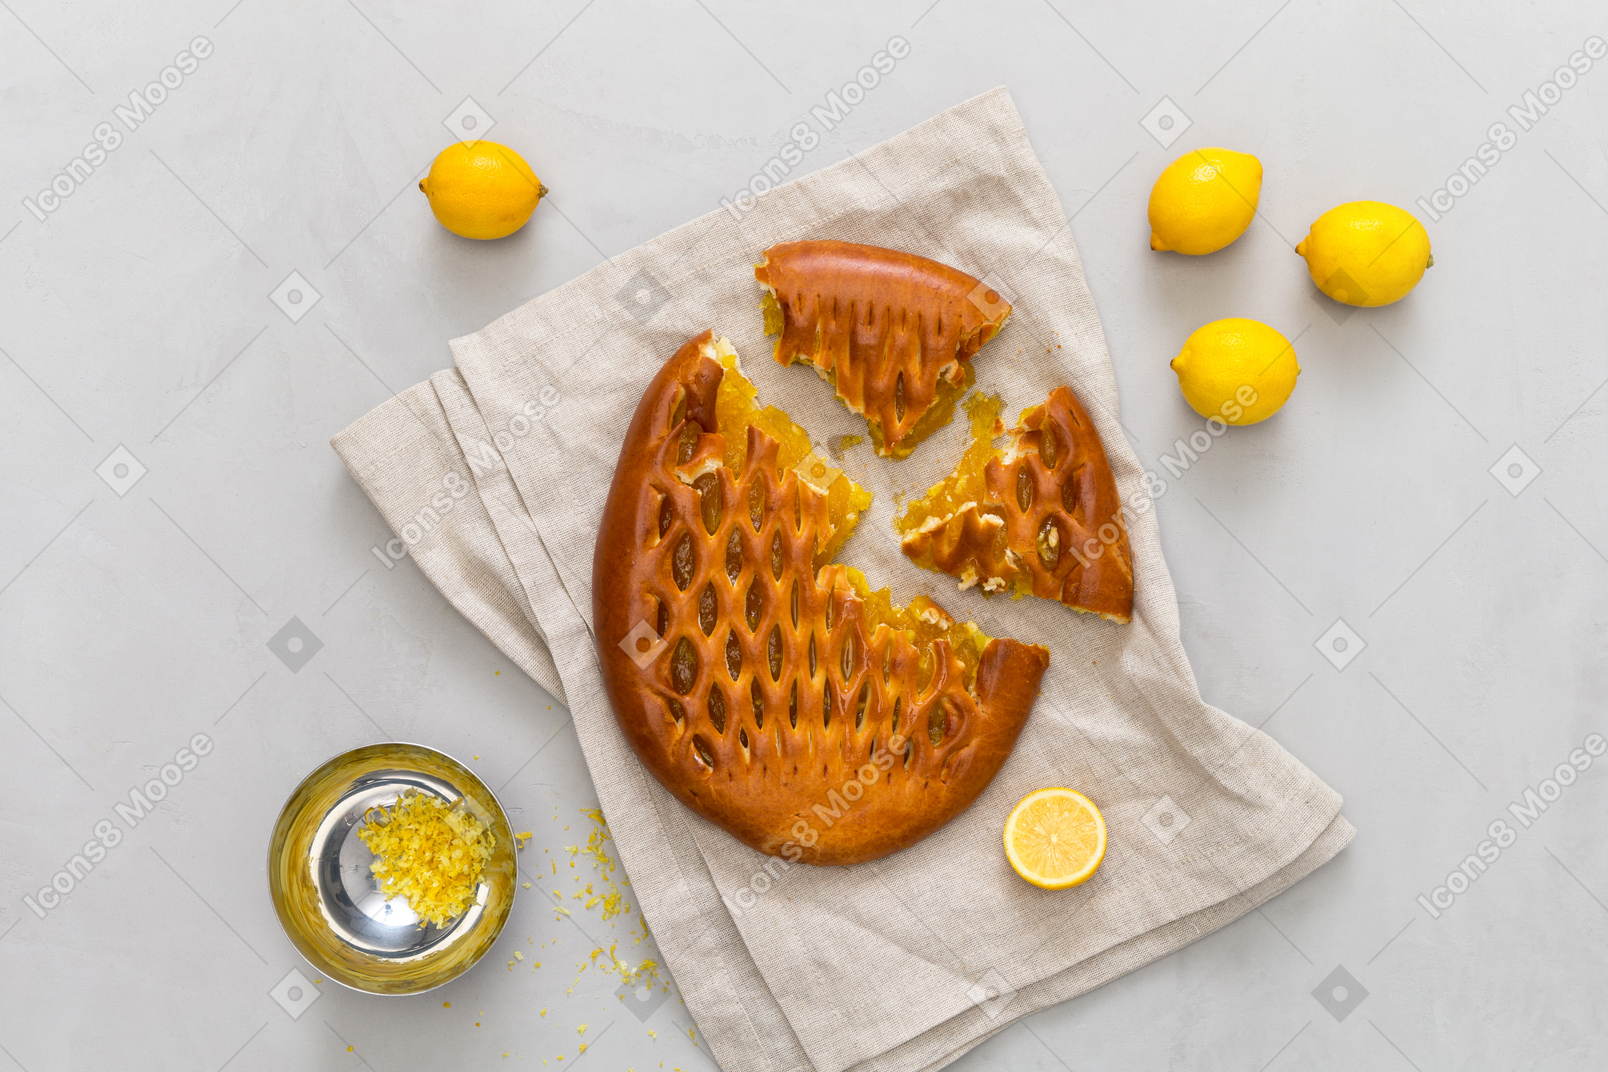 Все необходимые ингредиенты и в результате лимонный пирог